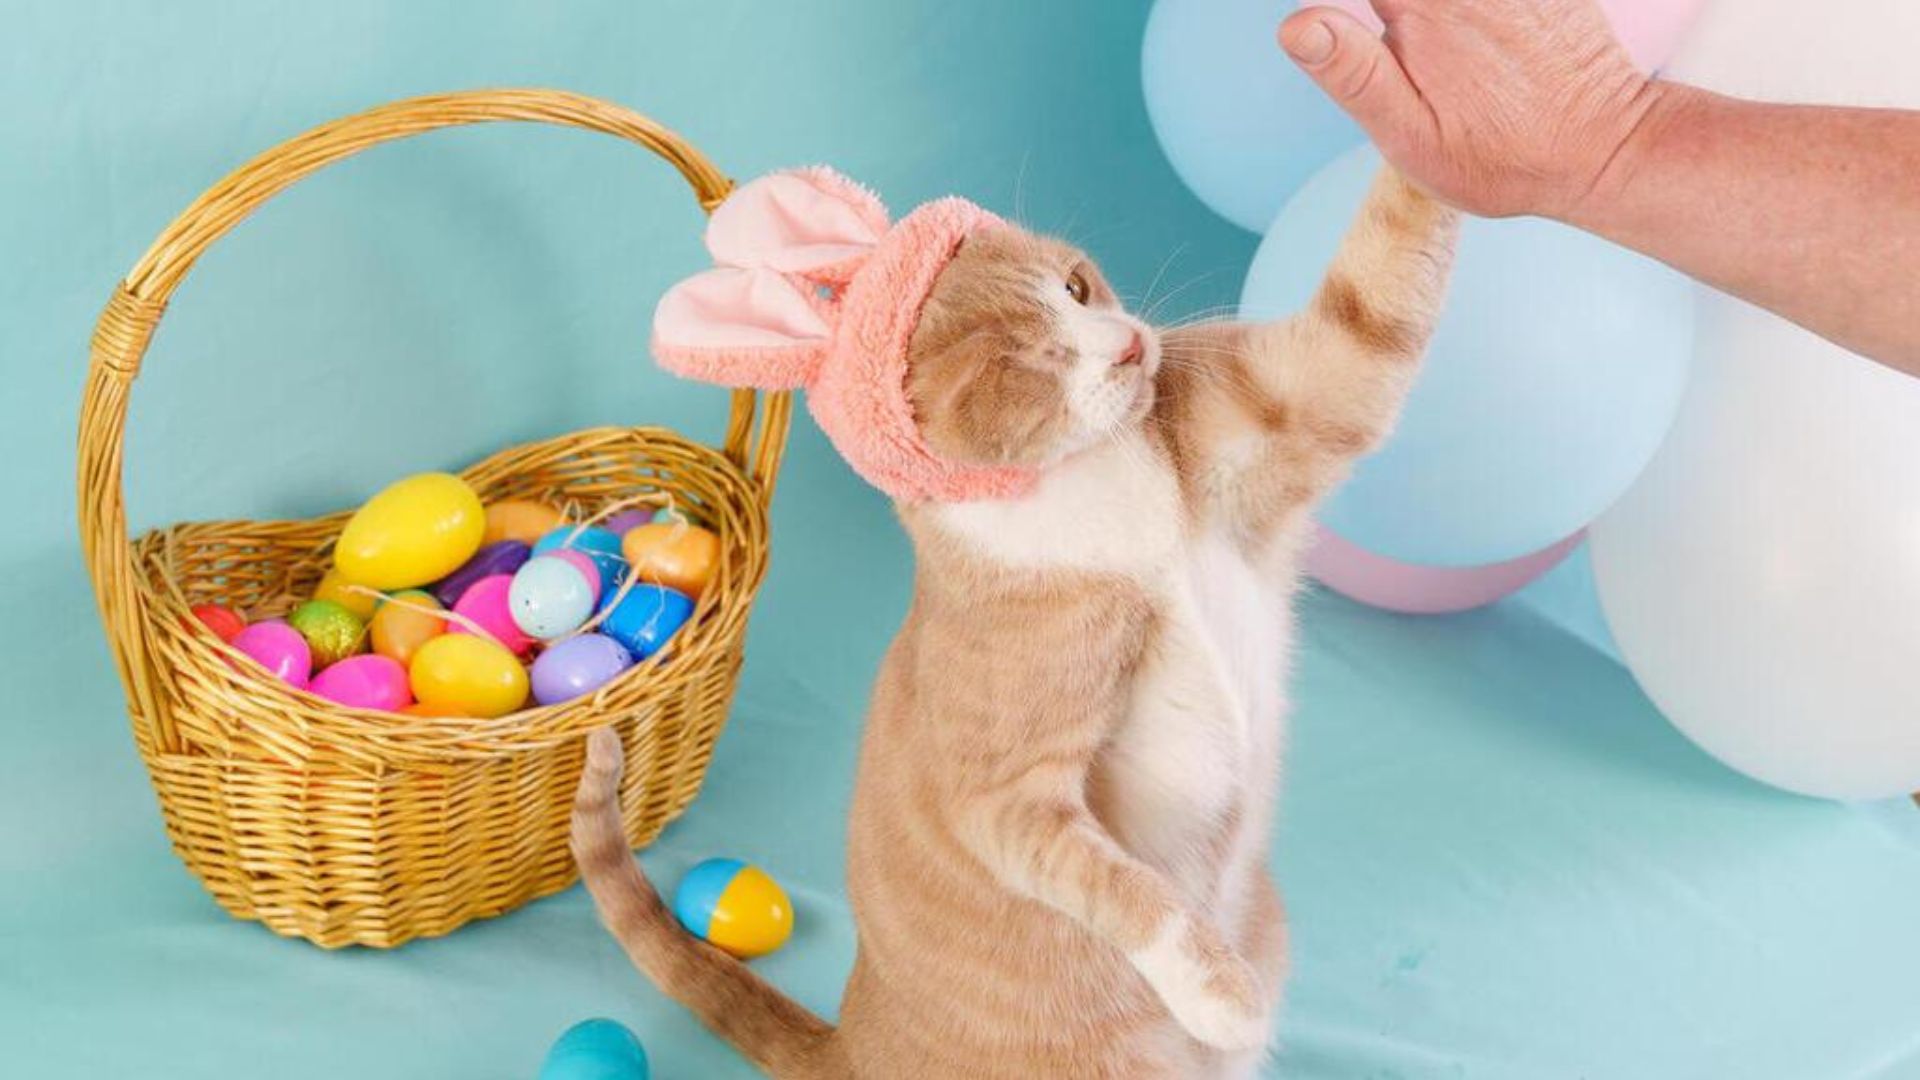 La conmovedora historia de Crash, el gato sin ojo que se convirtió en el “Conejo de Pascua”